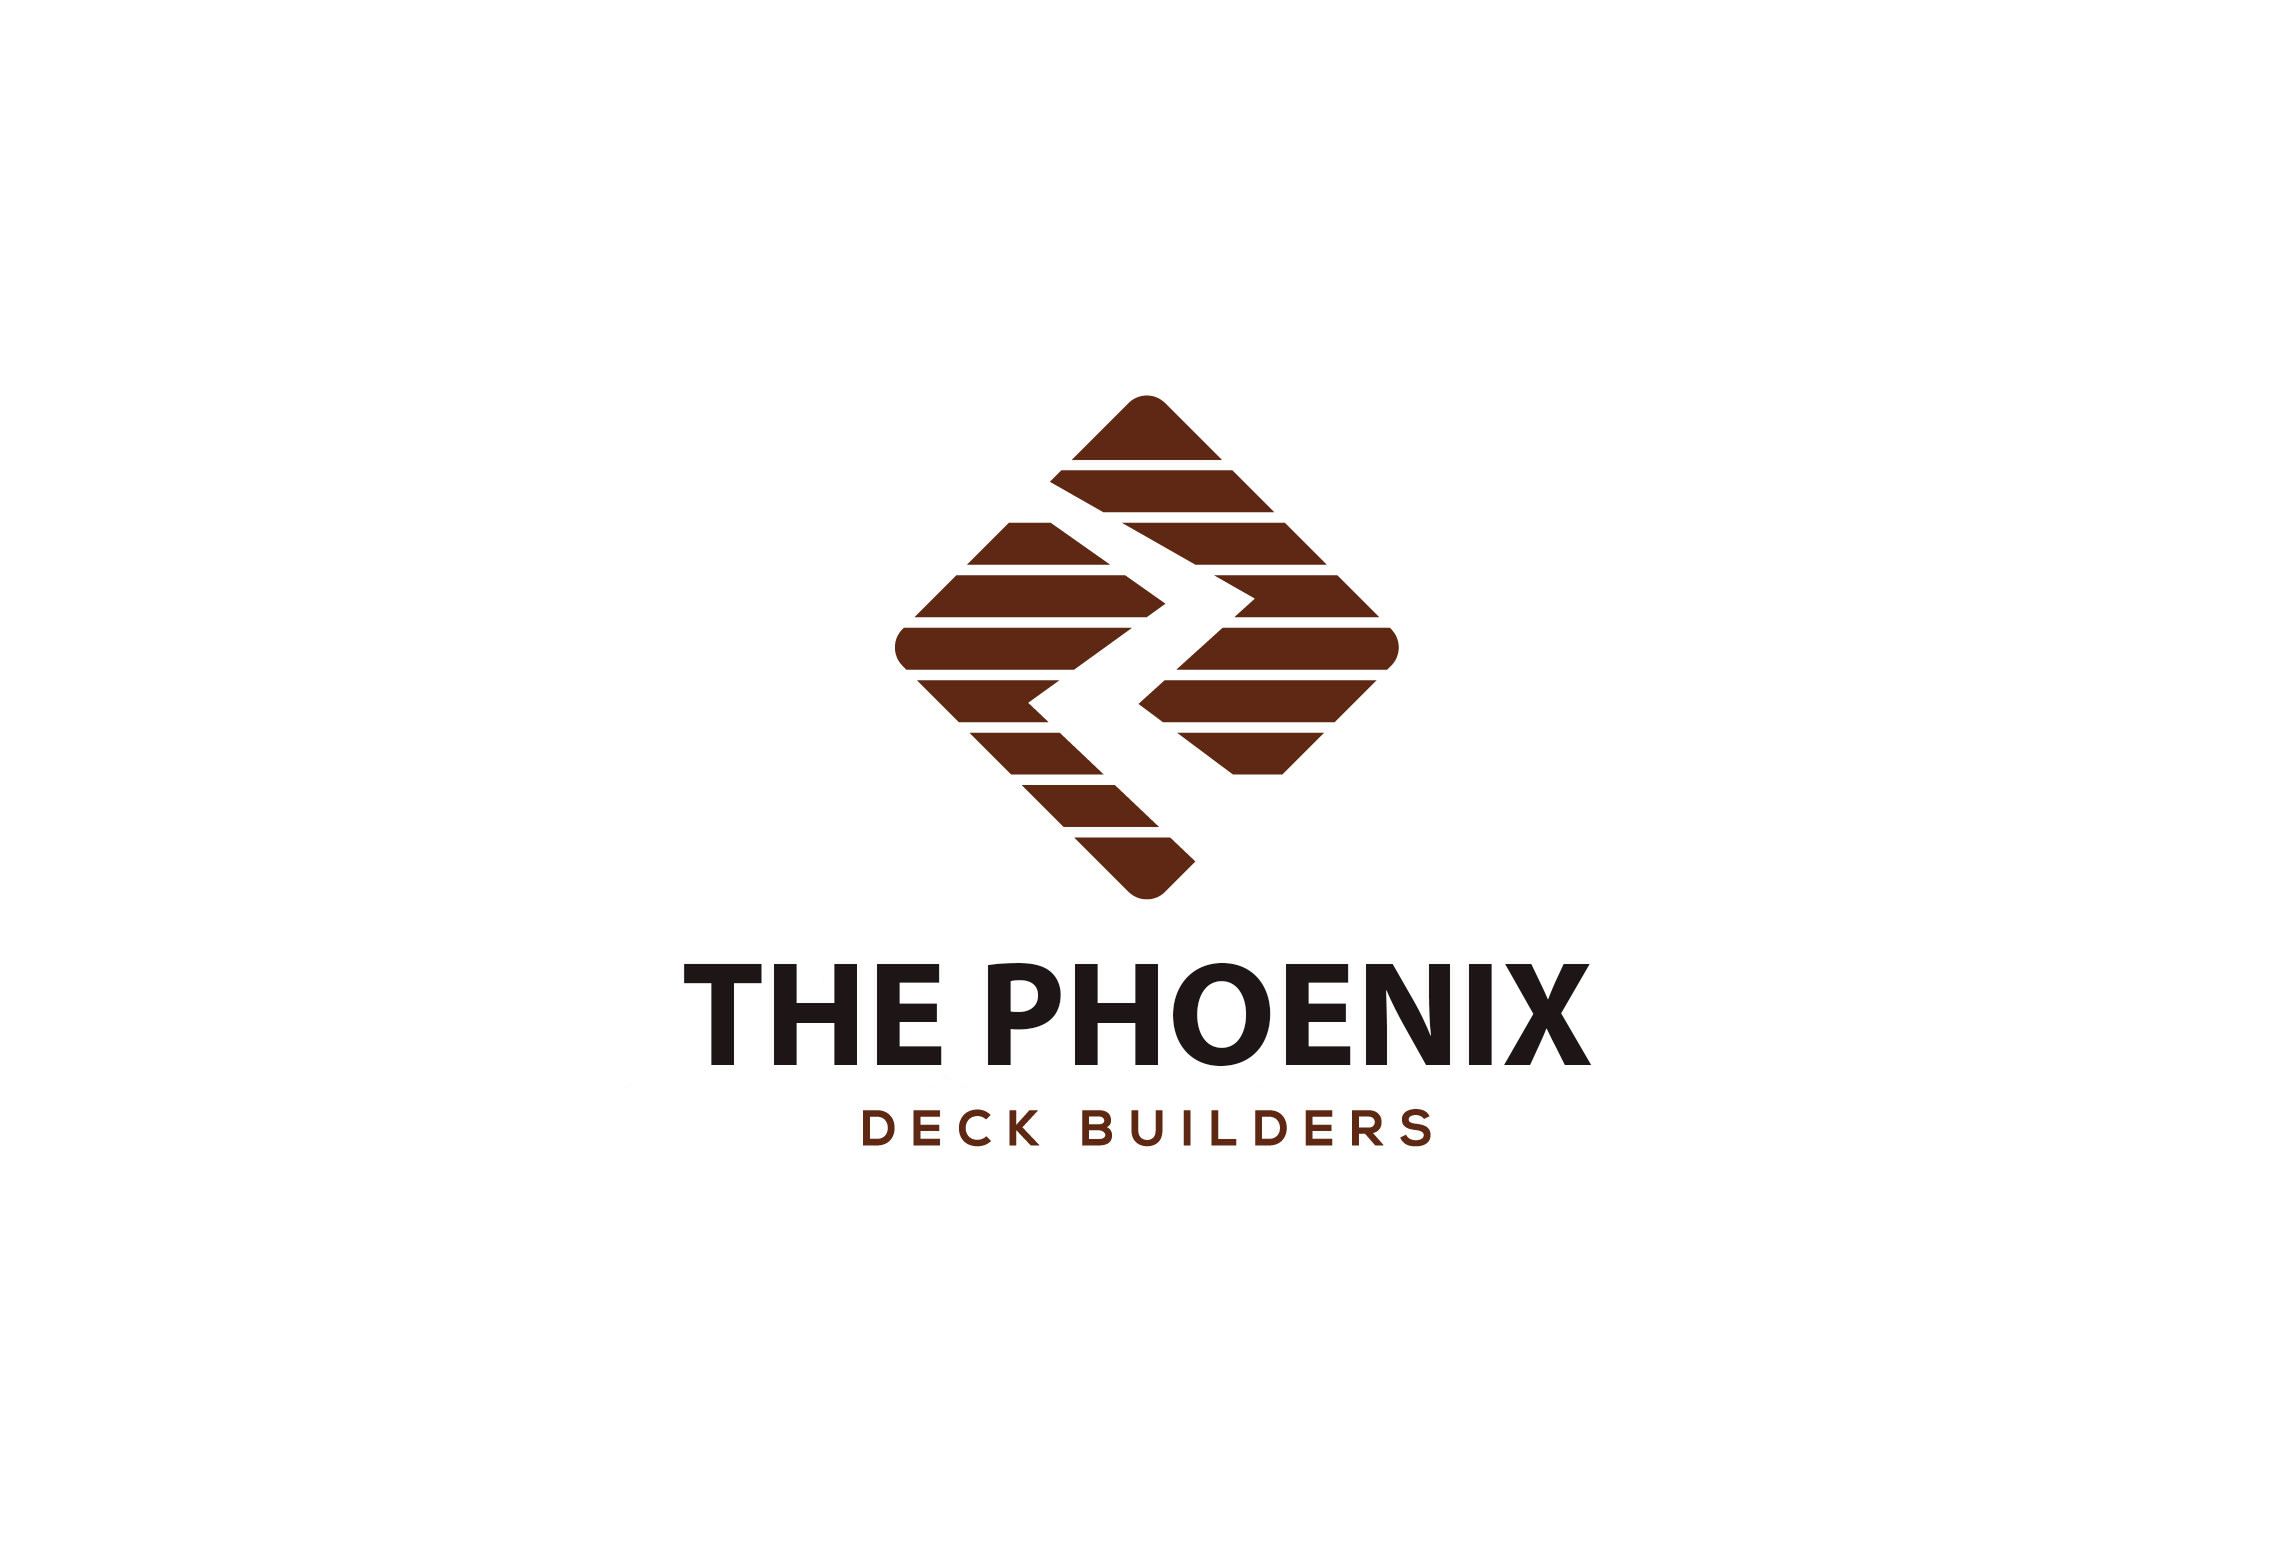 The phoenix deck builders